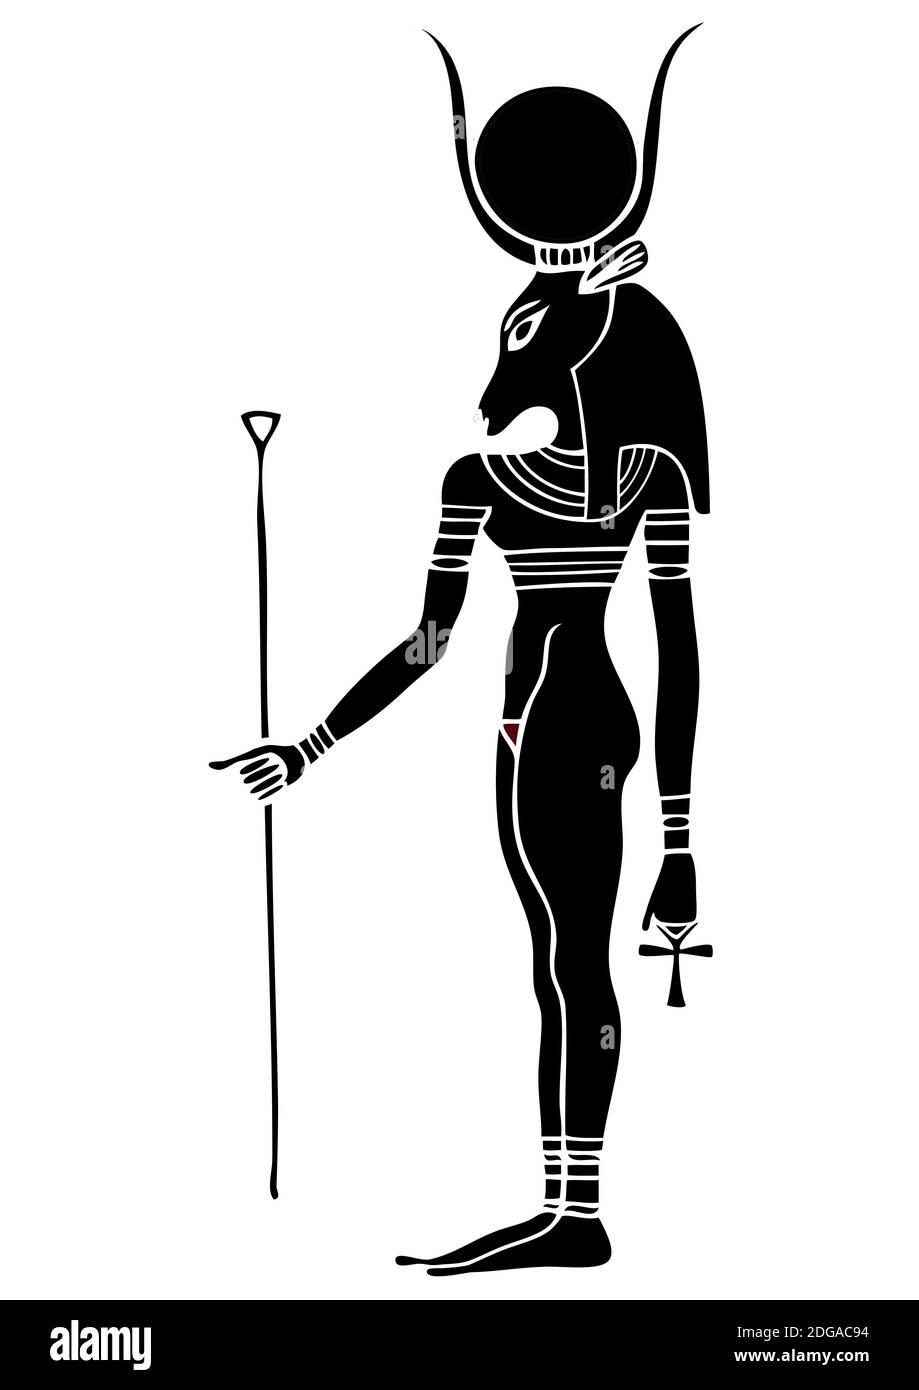 il dio dell'antico Egitto - Hathor - Hethert - È una delle più antiche divinità egiziane Foto Stock